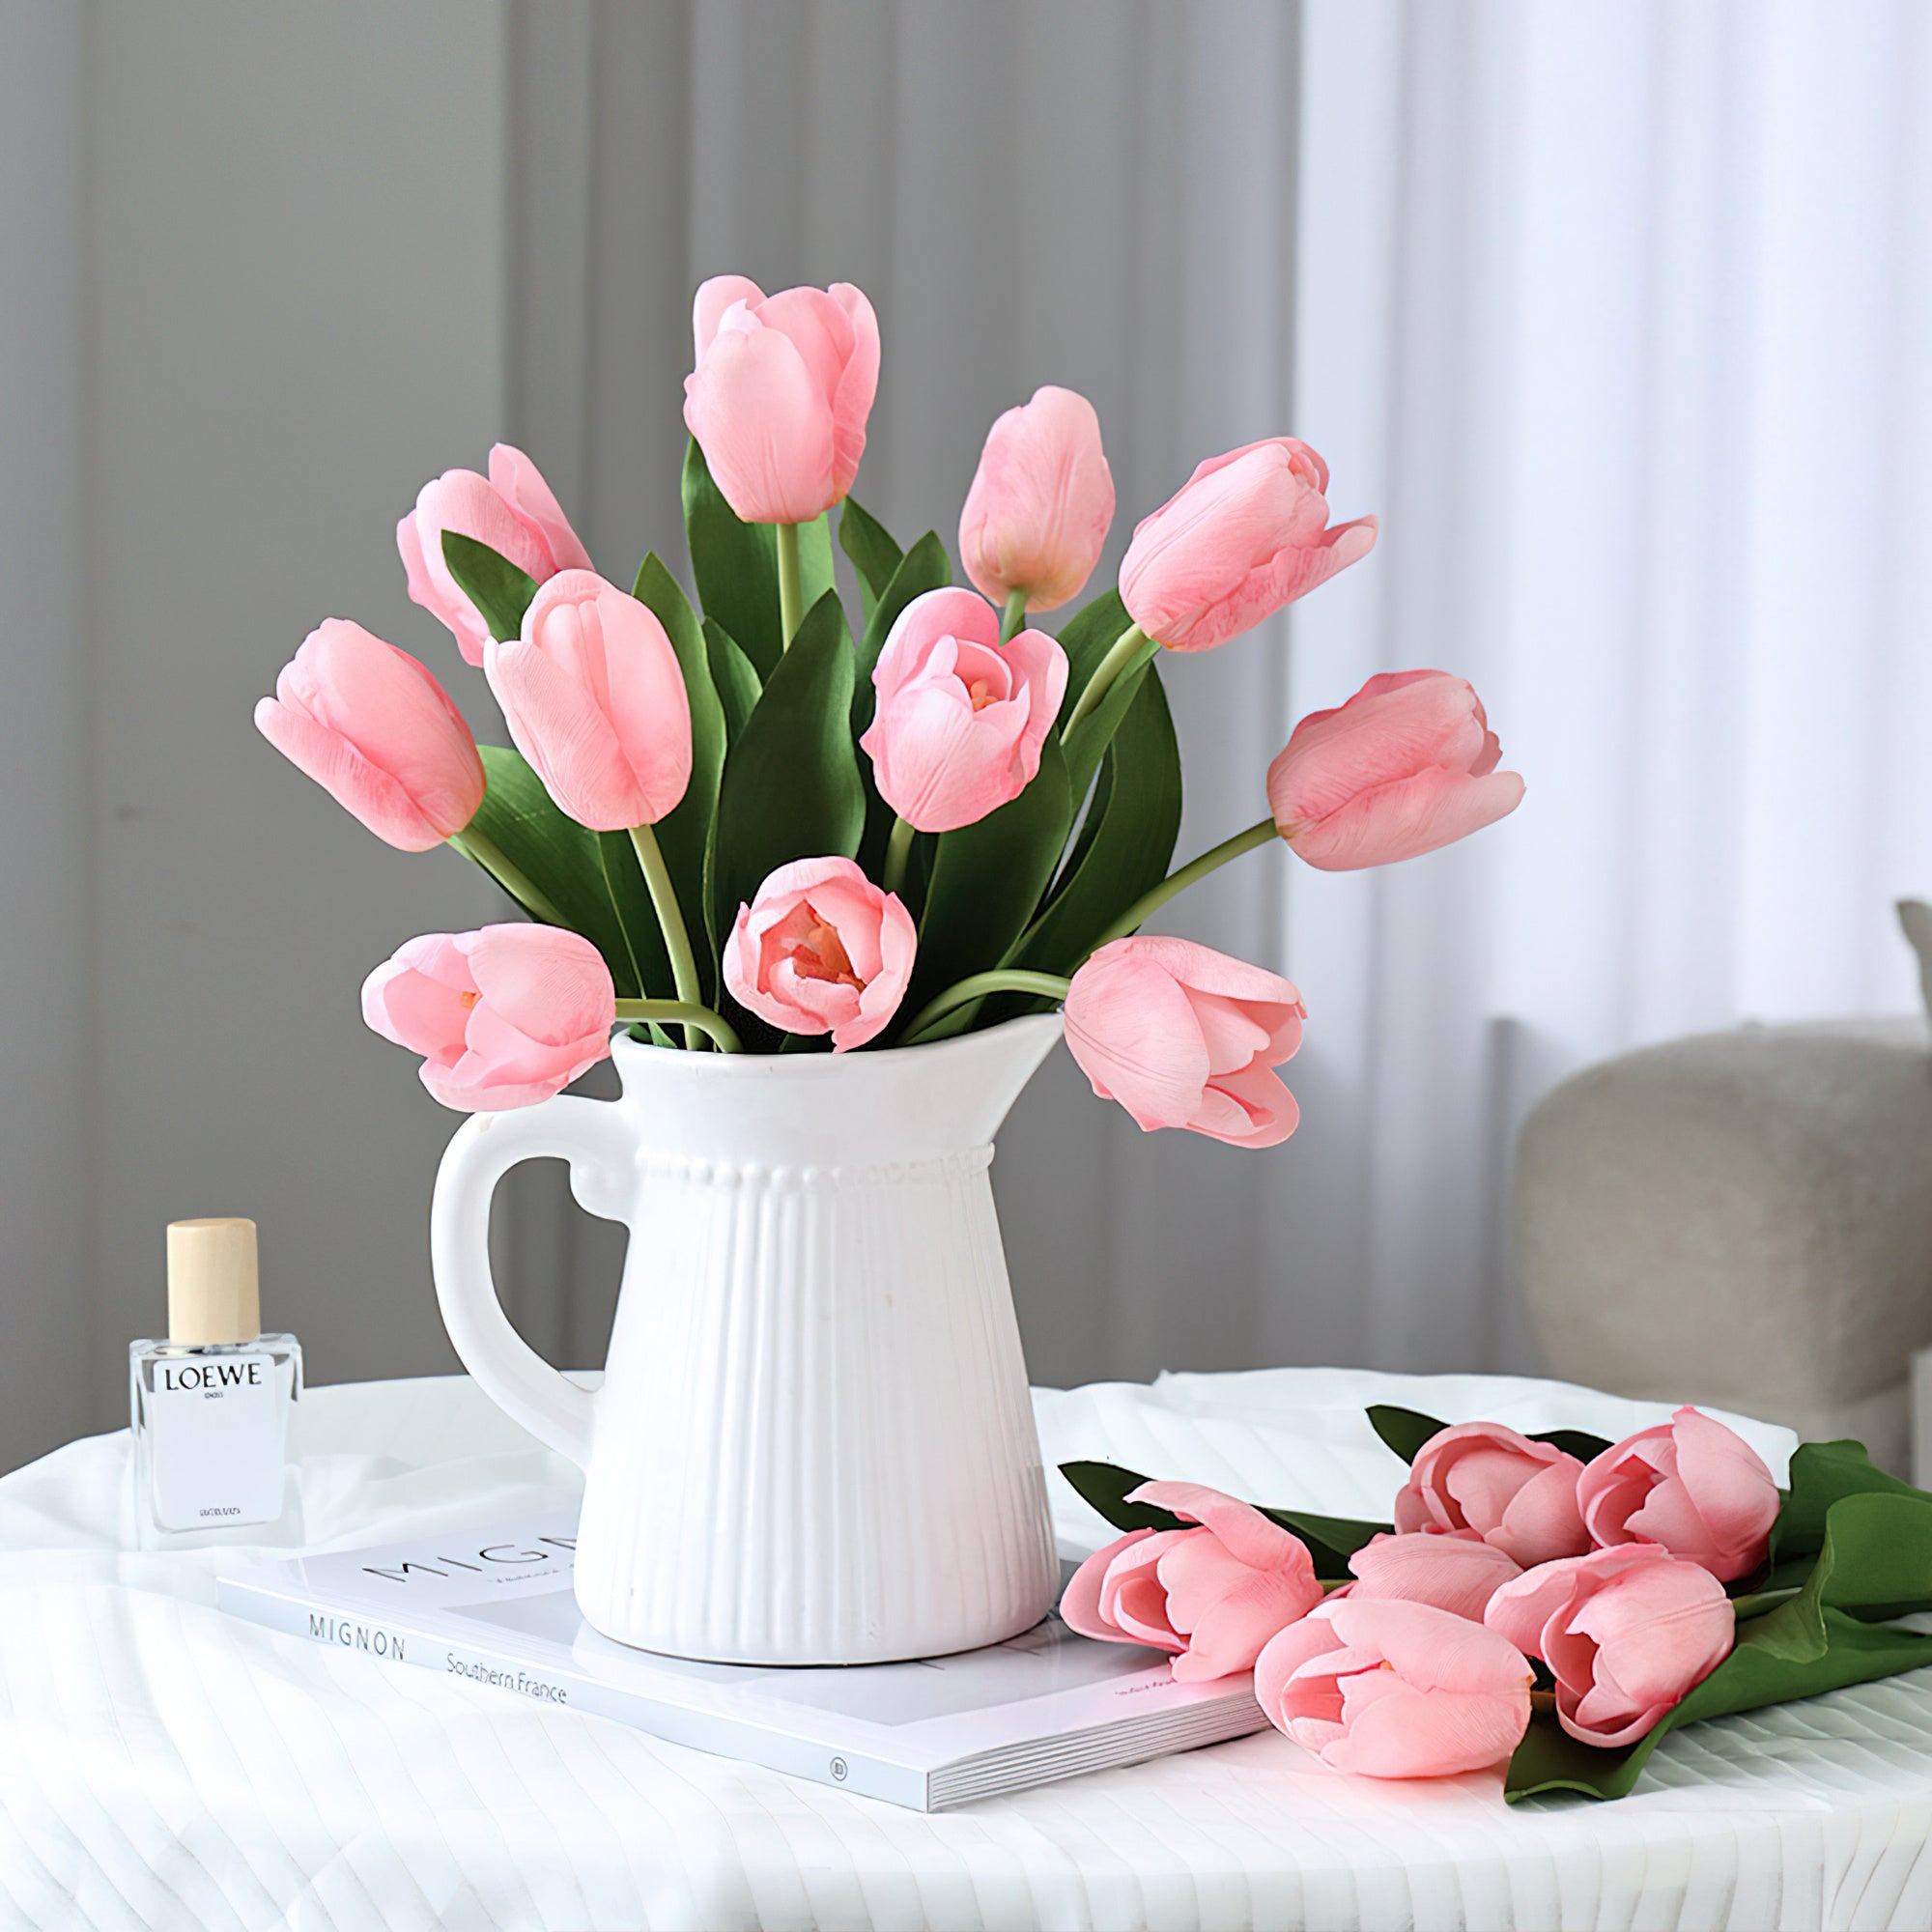 Tulipes en soie réalistes au toucher riche en humidité – Bouquet floral multicolore réaliste pour décoration sensorielle de la maison